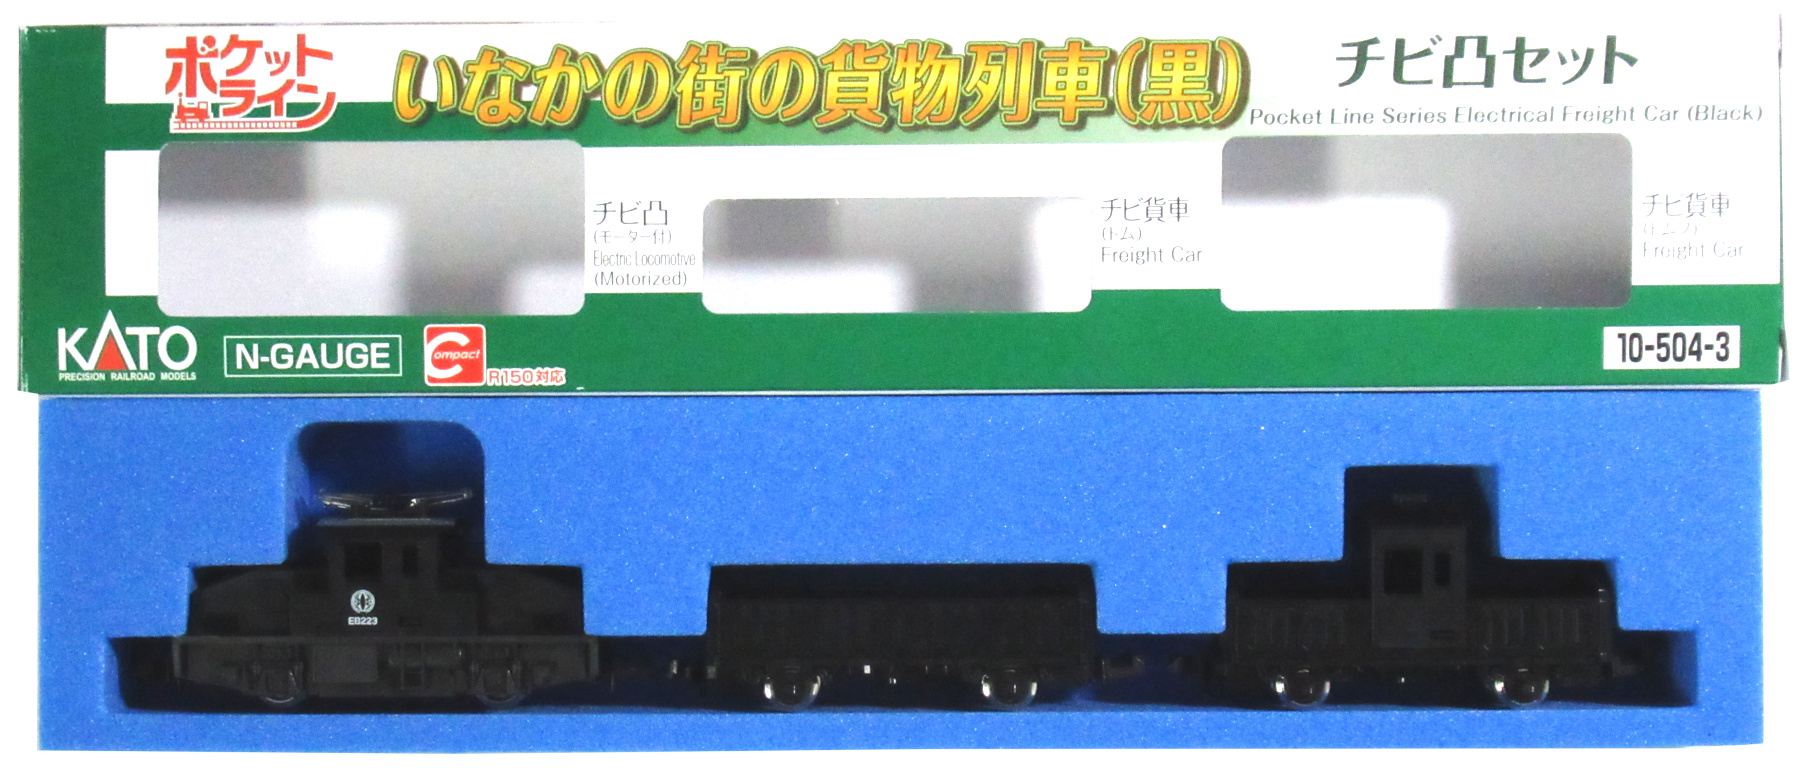 Nゲージ ポケットライン チビ客車 3両セット(KATO) - 鉄道模型